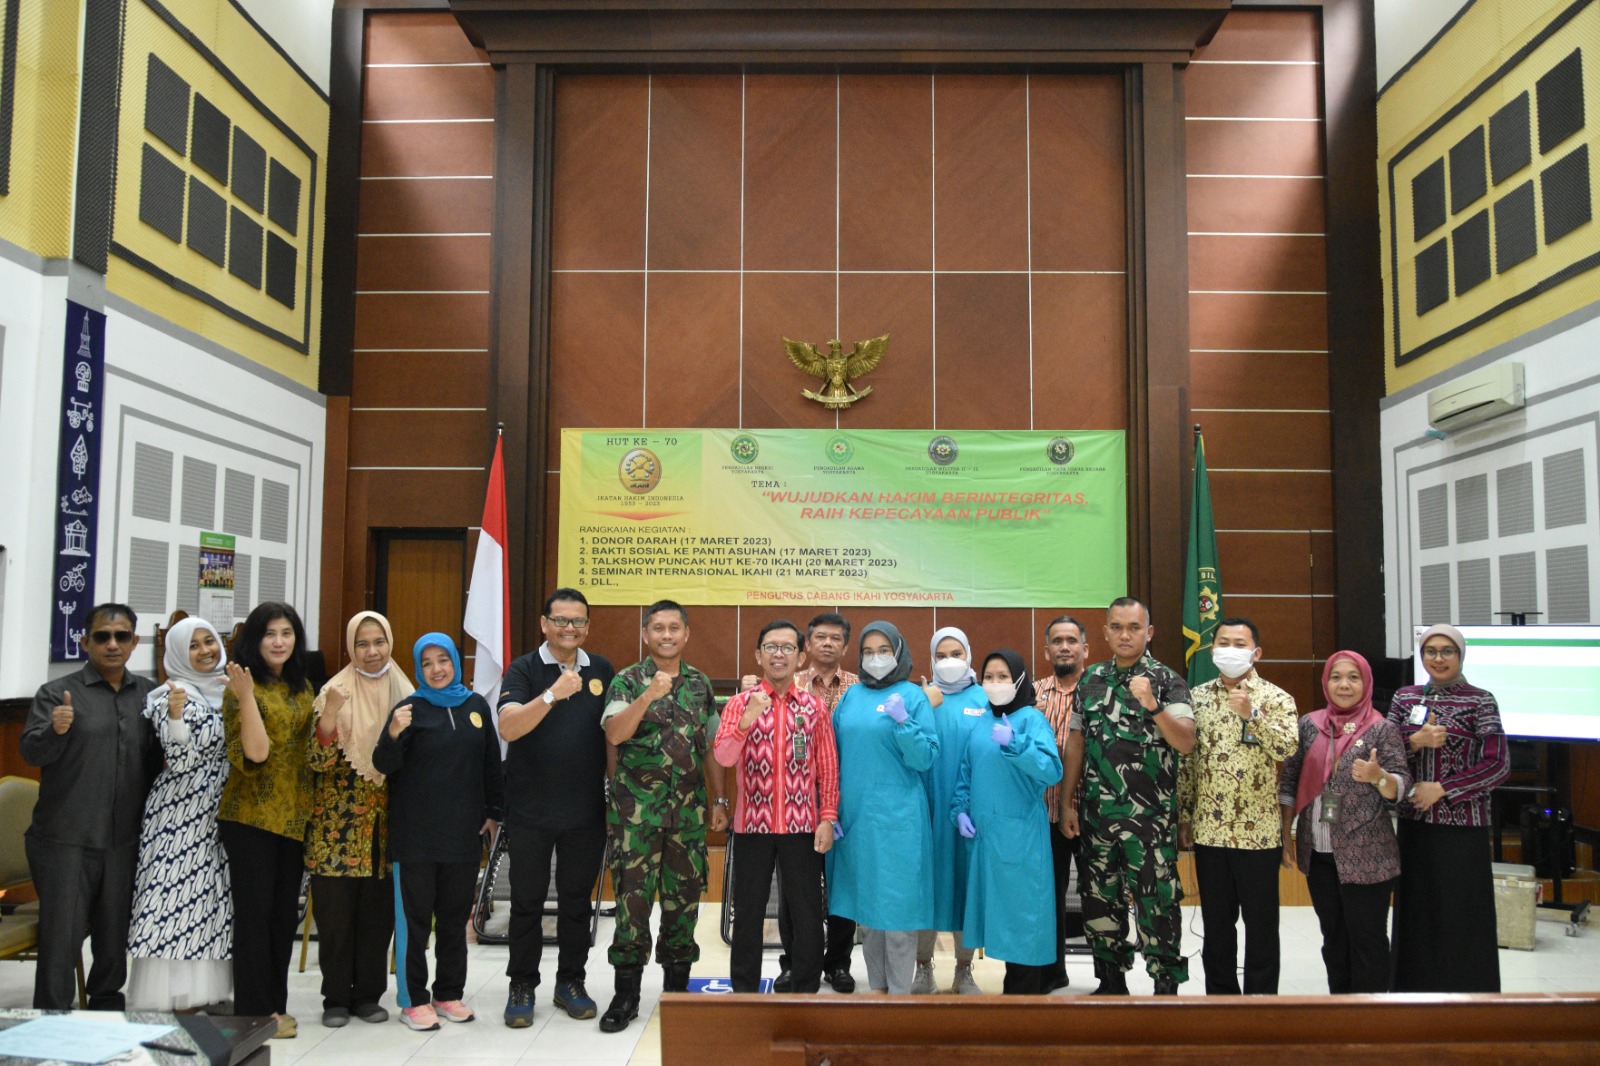 Pengadilan Negeri Yogyakarta Mengikuti Donor Darah dalam Rangka Peringatan HUT IKAHI ke-70